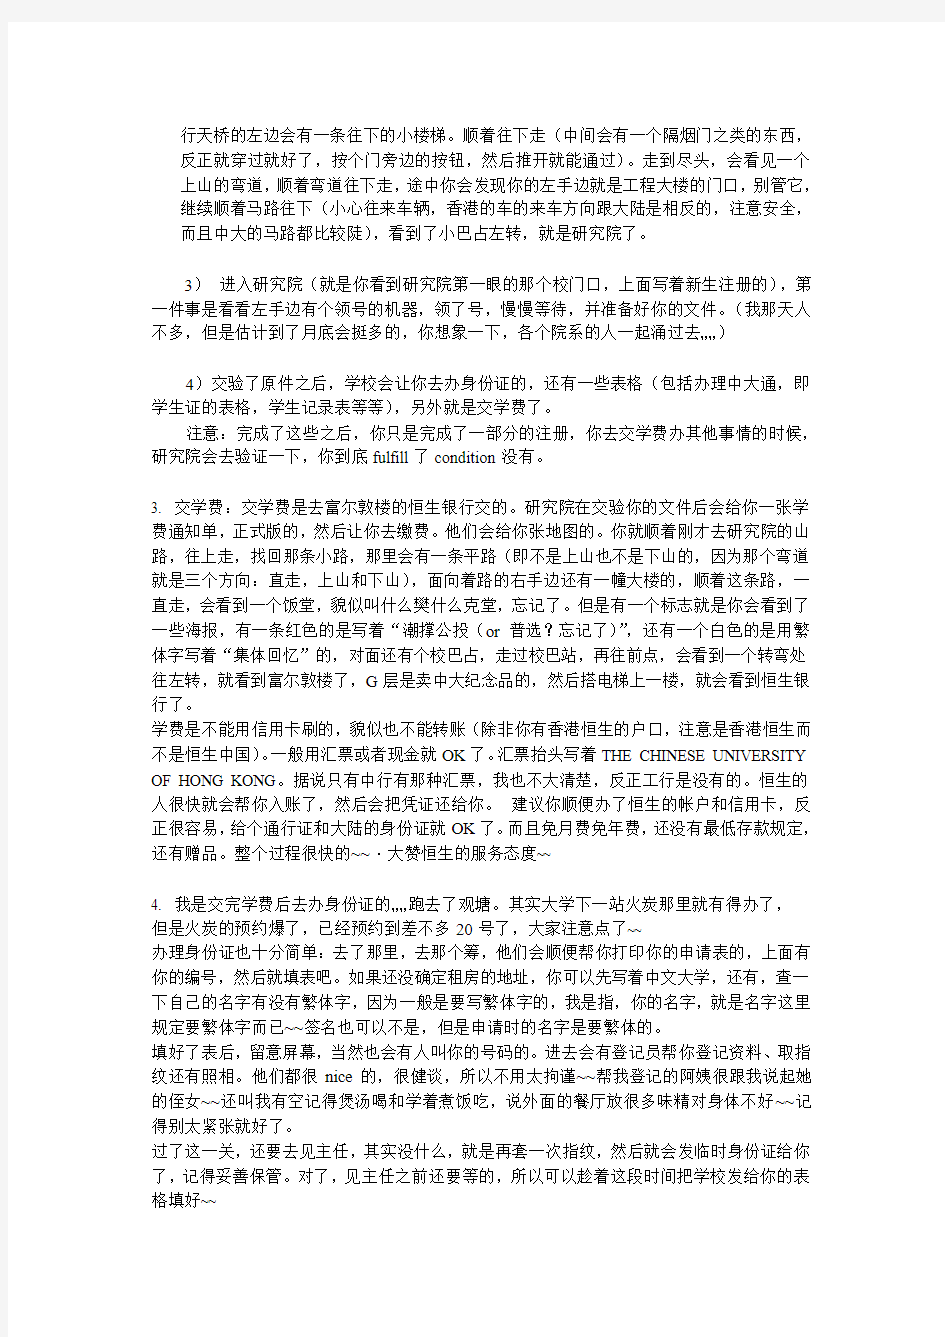 香港中文大学注册流程加初来乍到指南